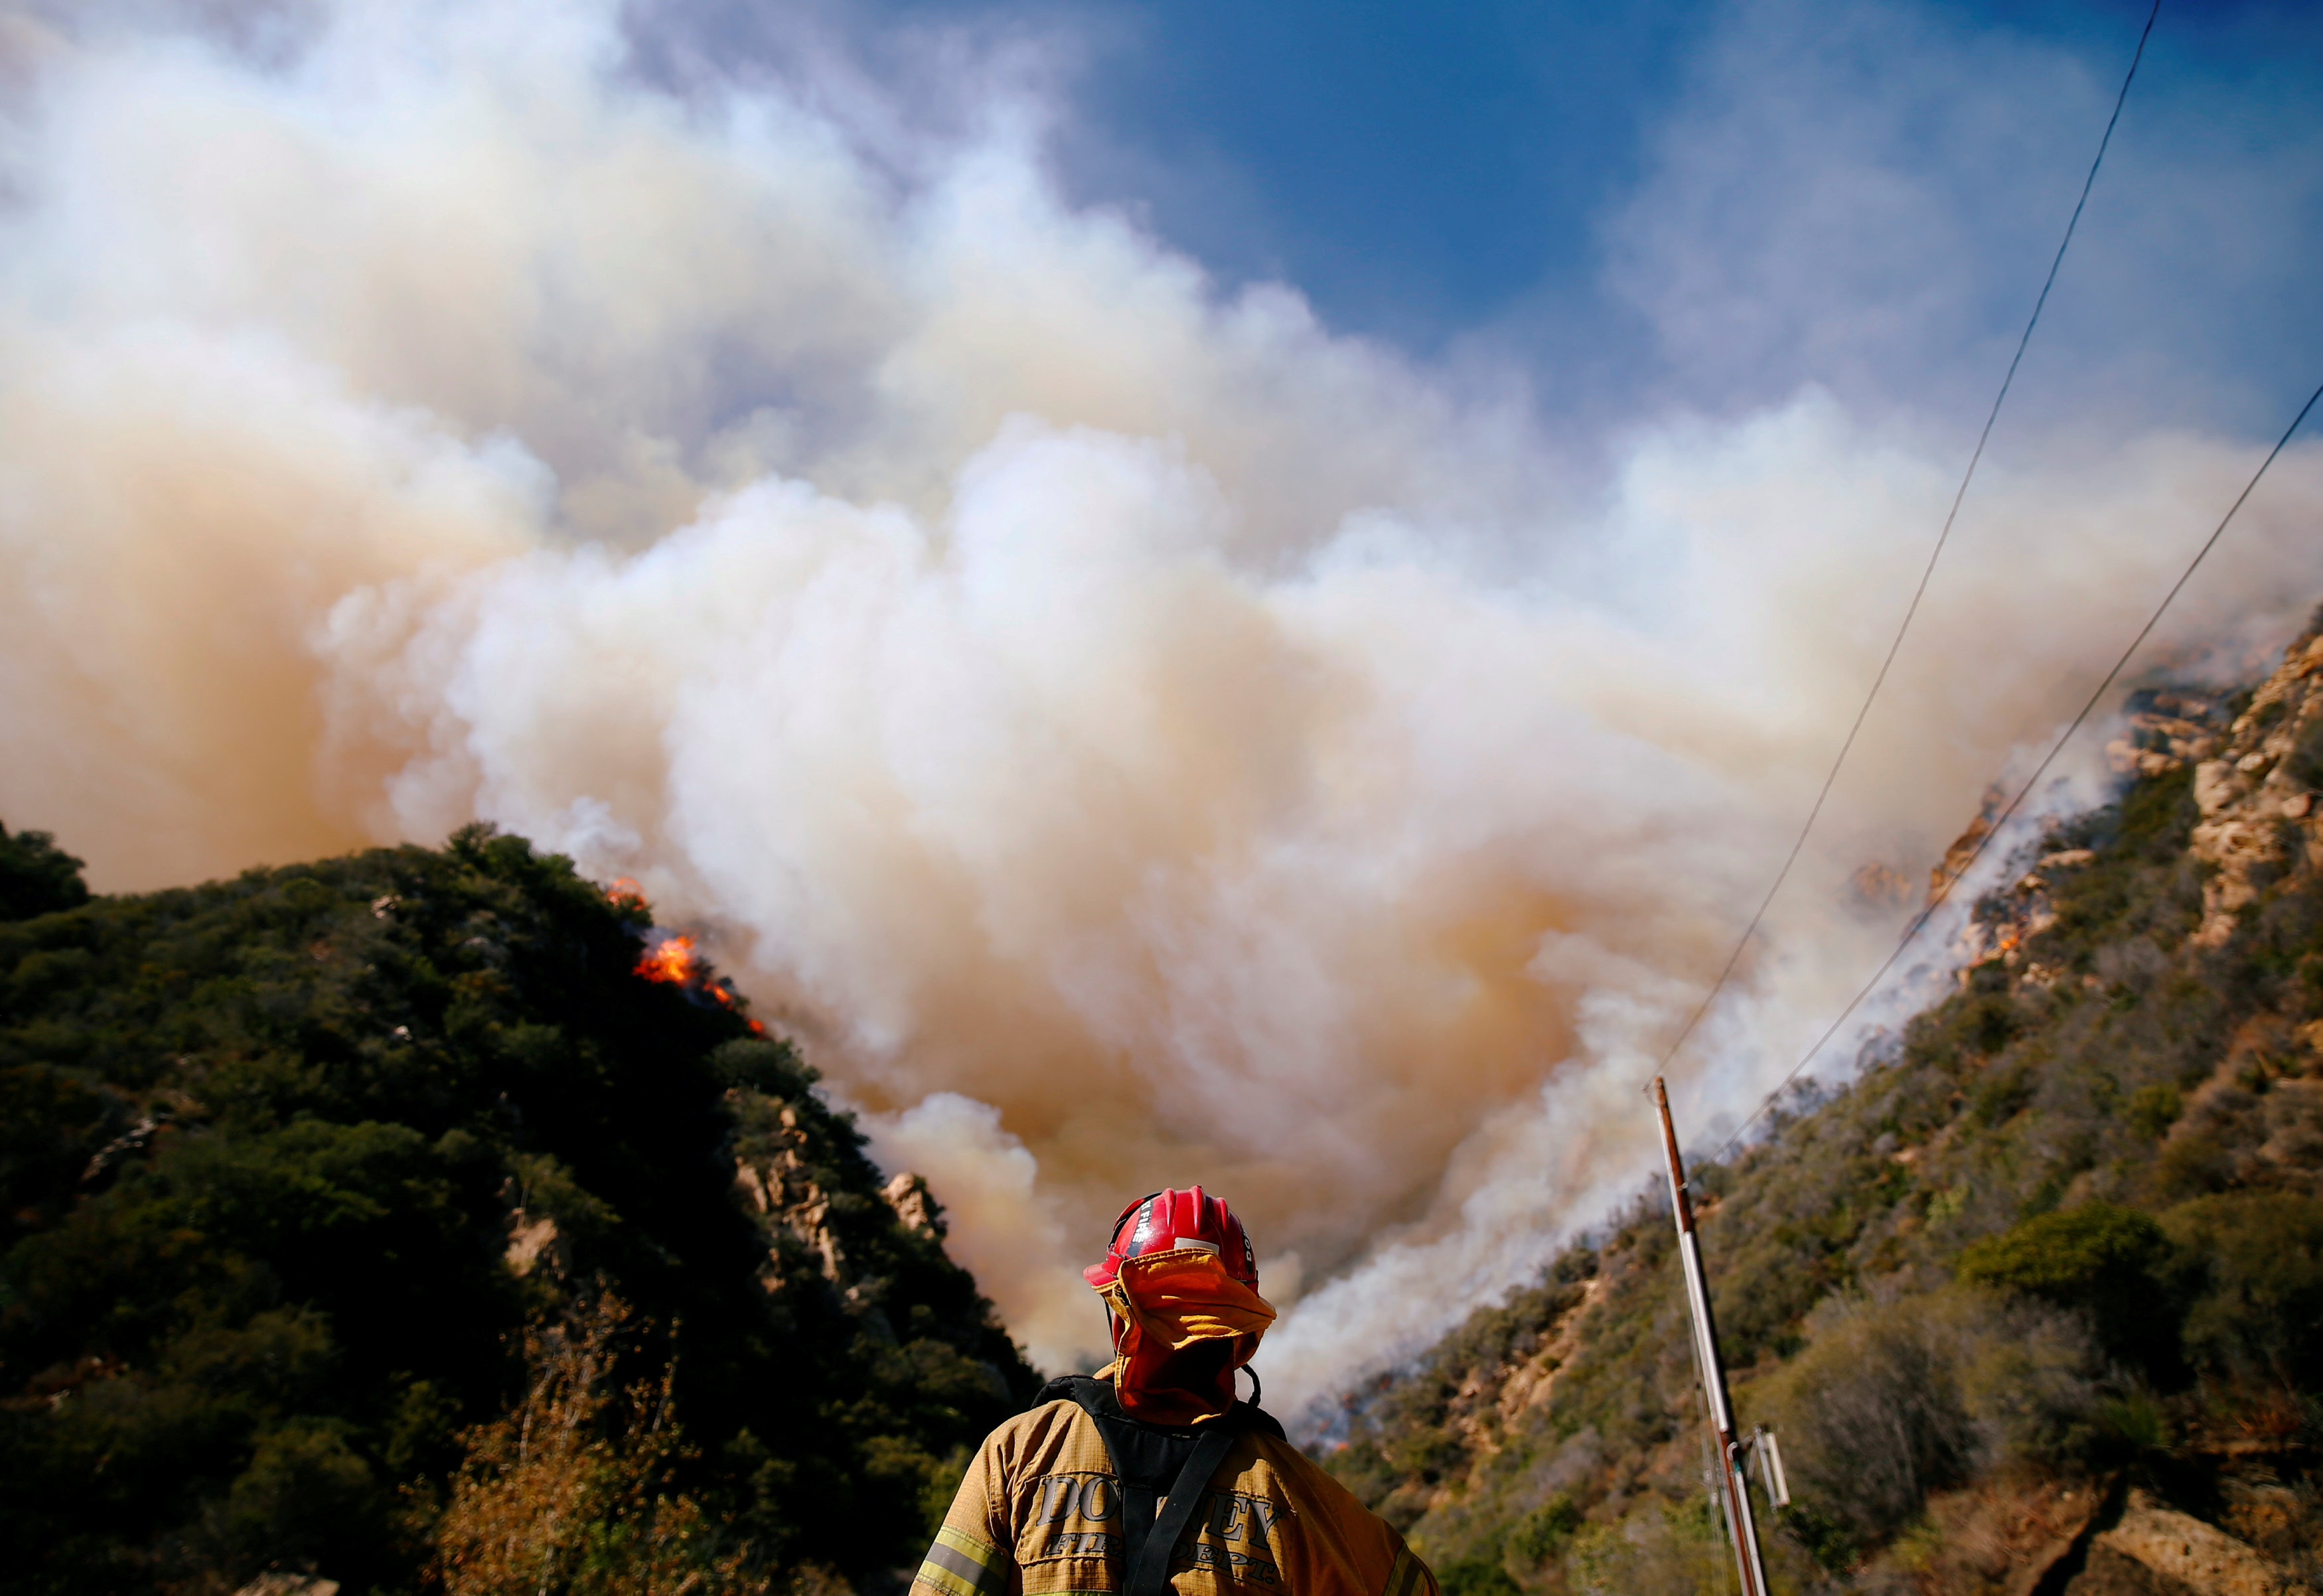 California incendios: Van 74 muertos y 1,011 desaparecidos